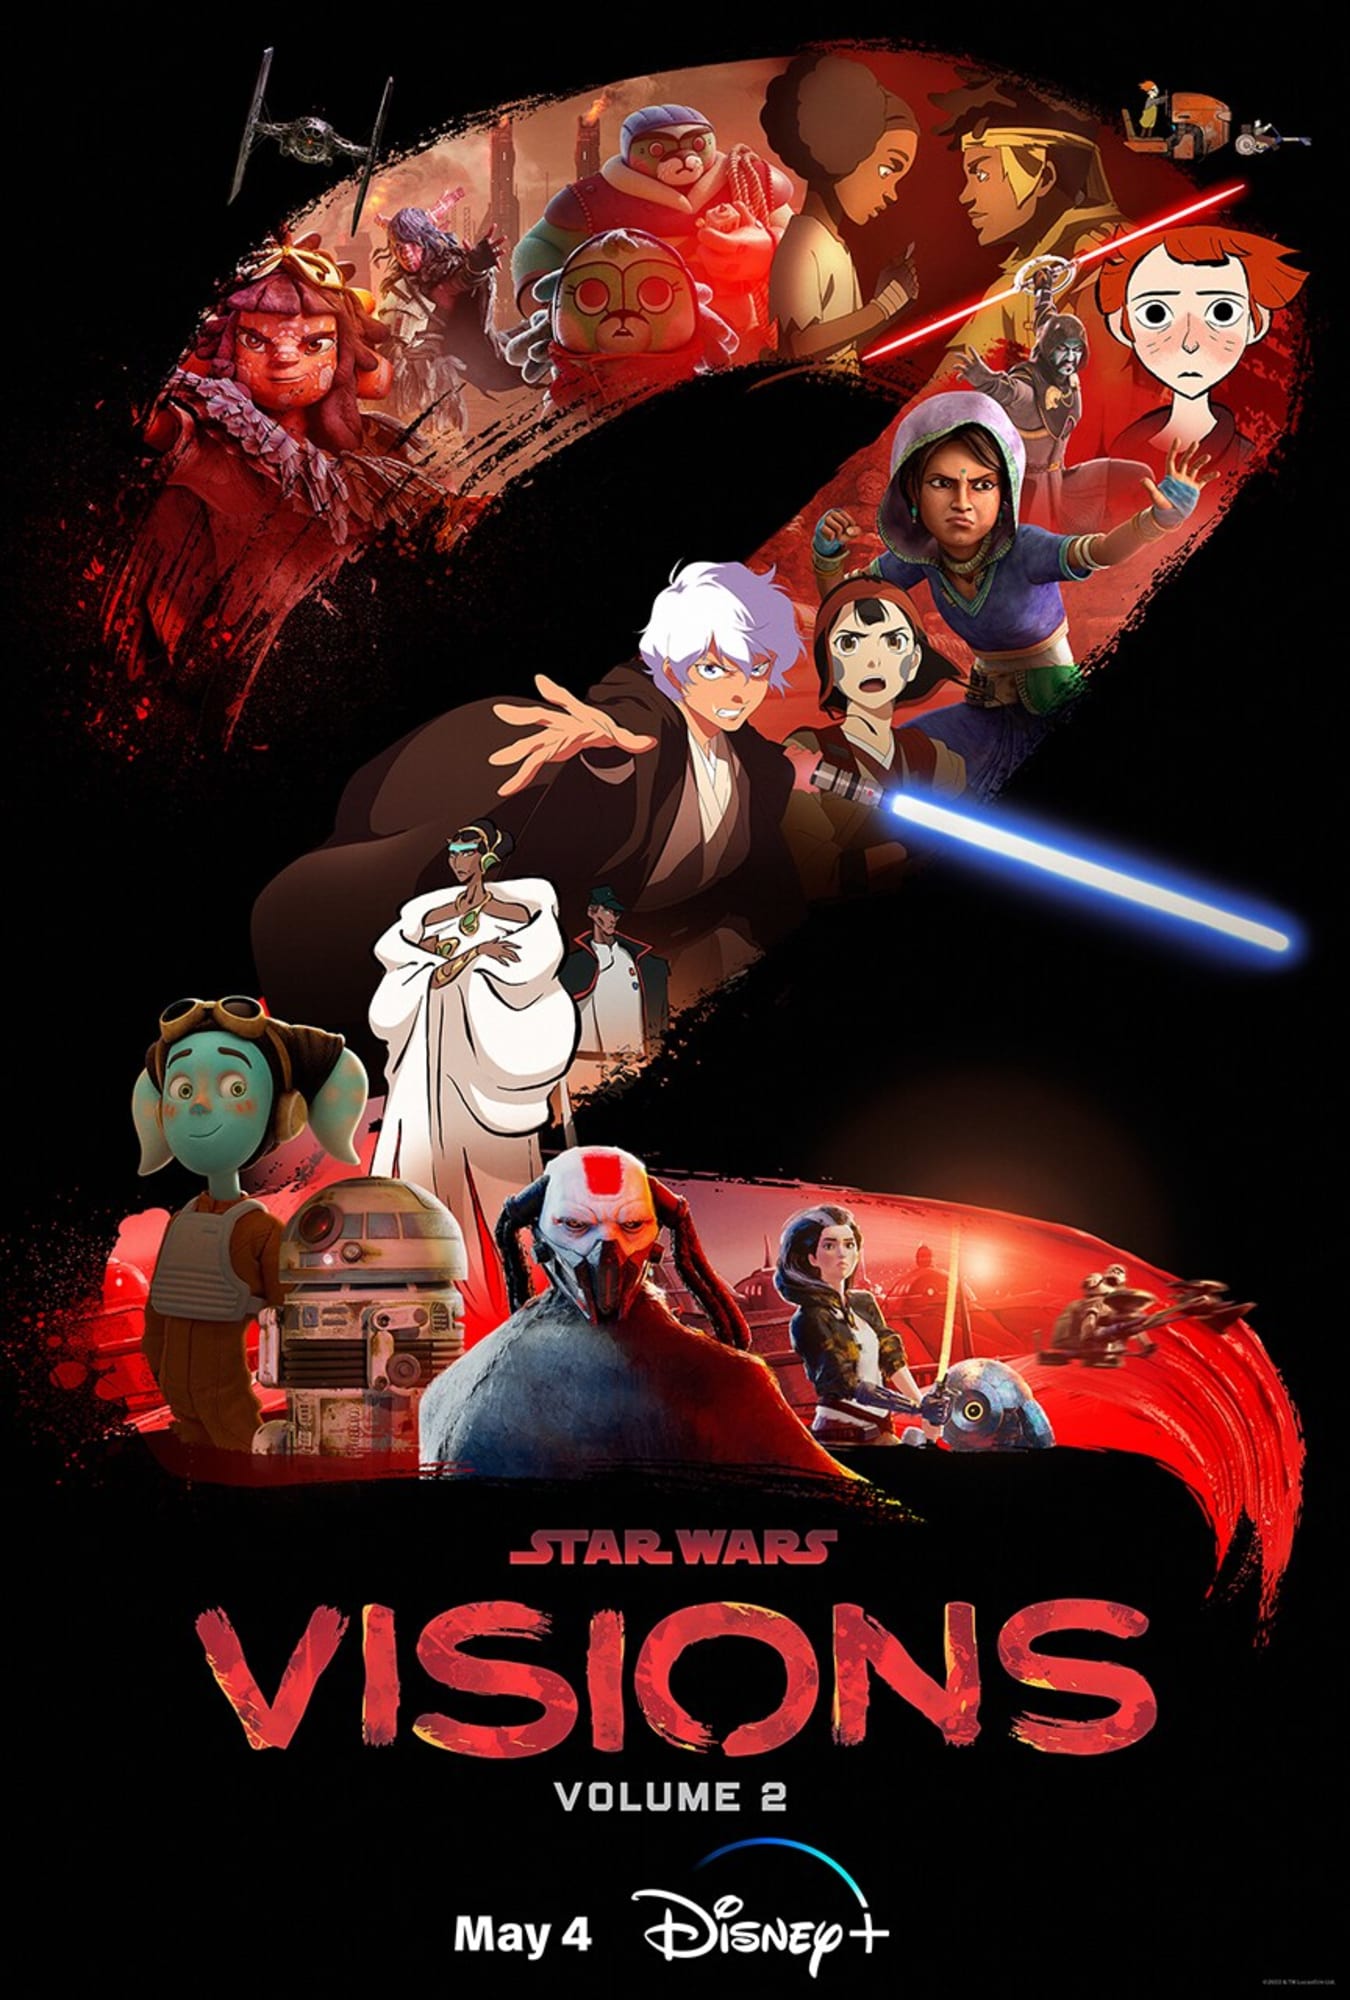 Star Wars: Visions season 2 episodes, ranked